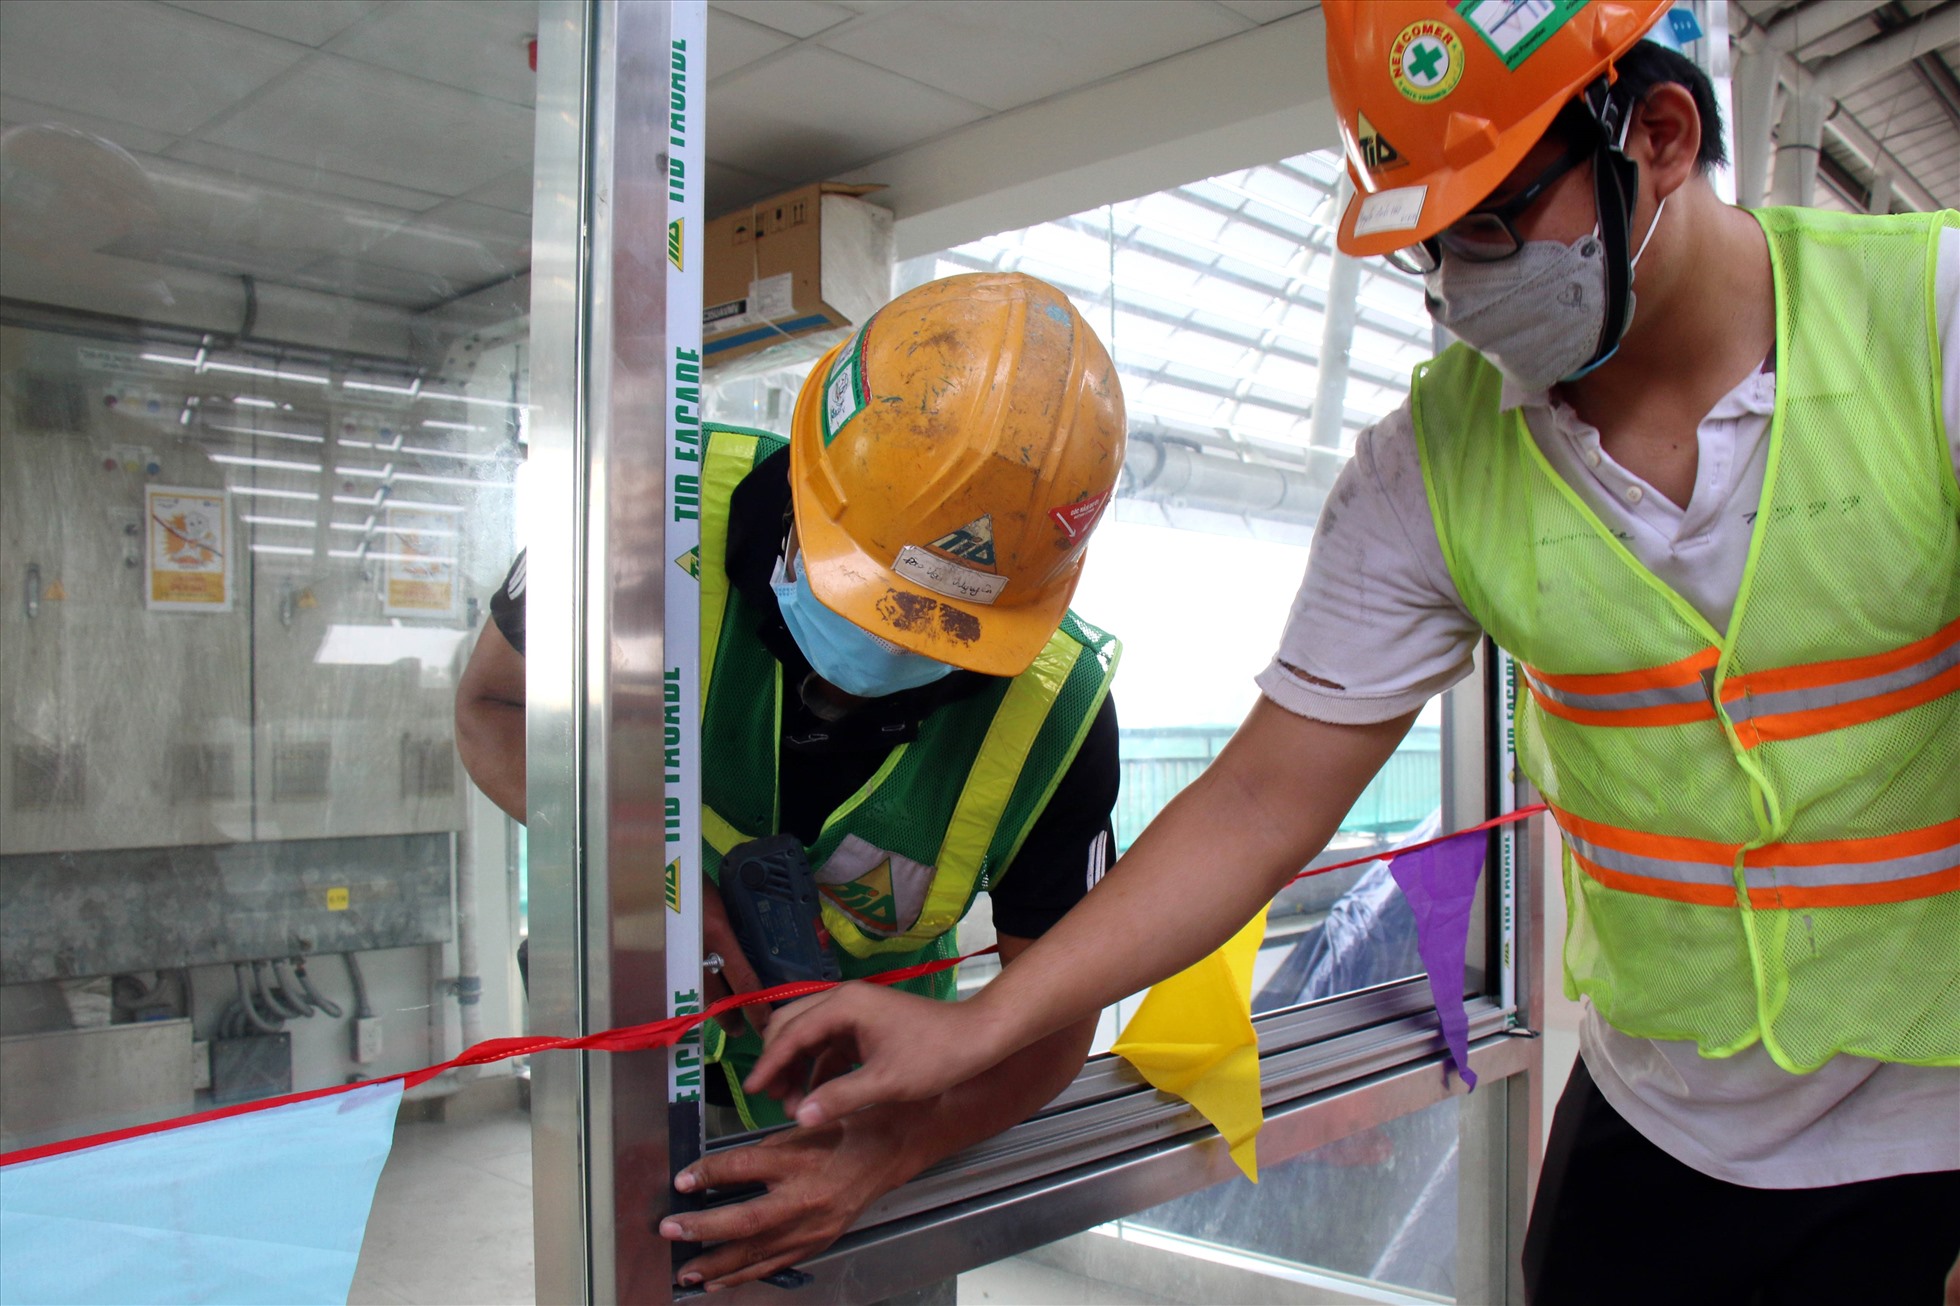 Hiện, các kỹ sư, công nhân đang thực hiện lắp dựng và hoàn thiện thang máy nhà ga (bao gồm khung kim loại và kính cường lực ốp các mặt); hoàn thiện phòng bán vé.